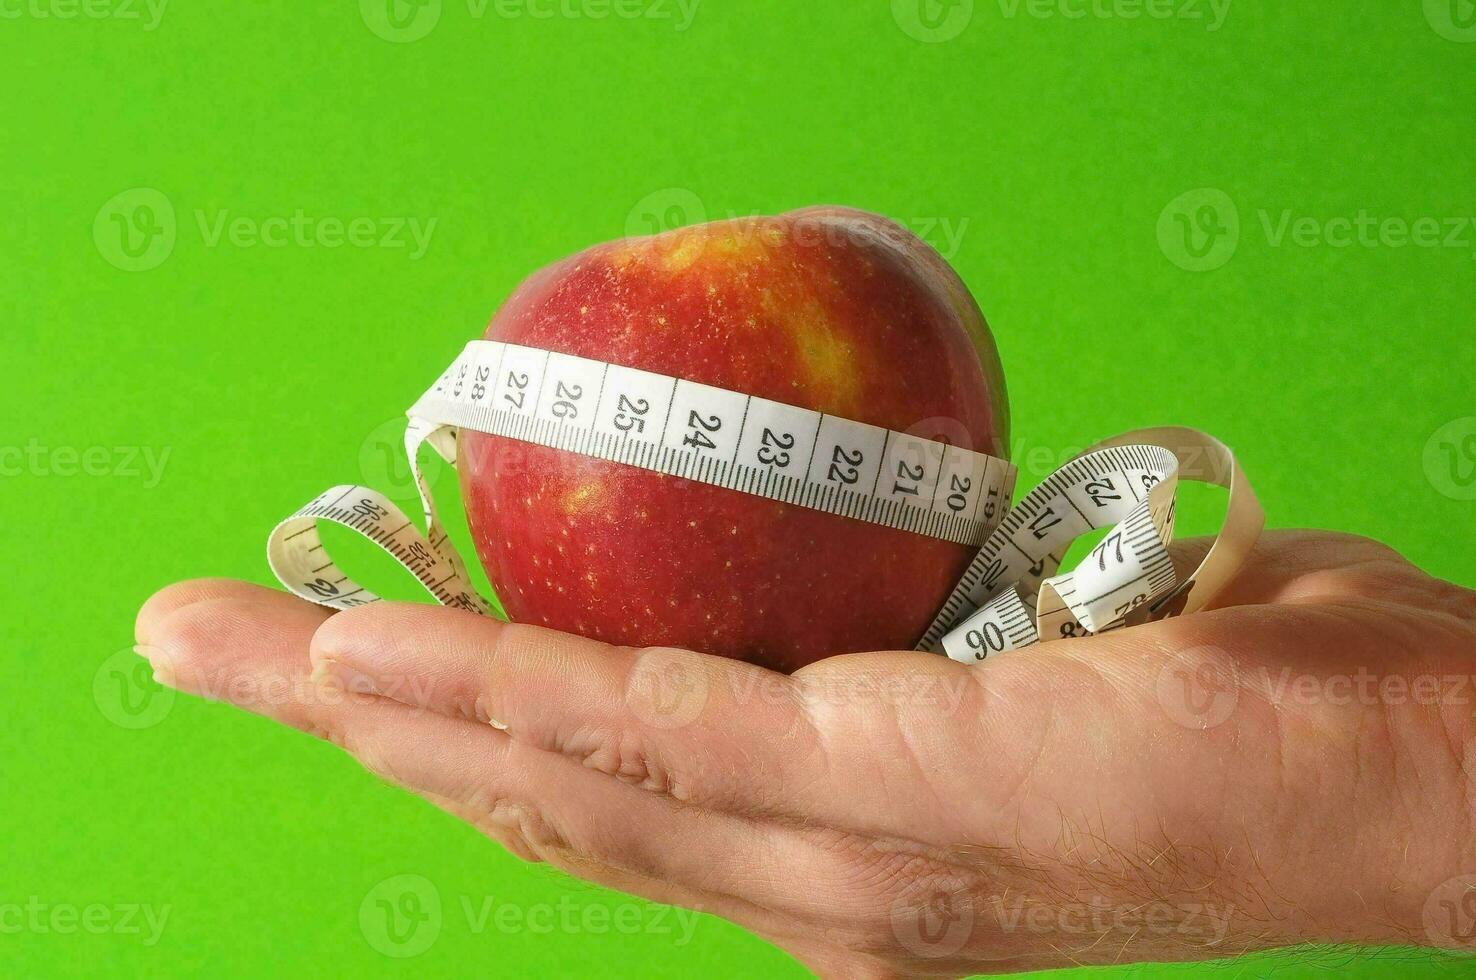 un persona participación un manzana con un medición cinta alrededor eso foto